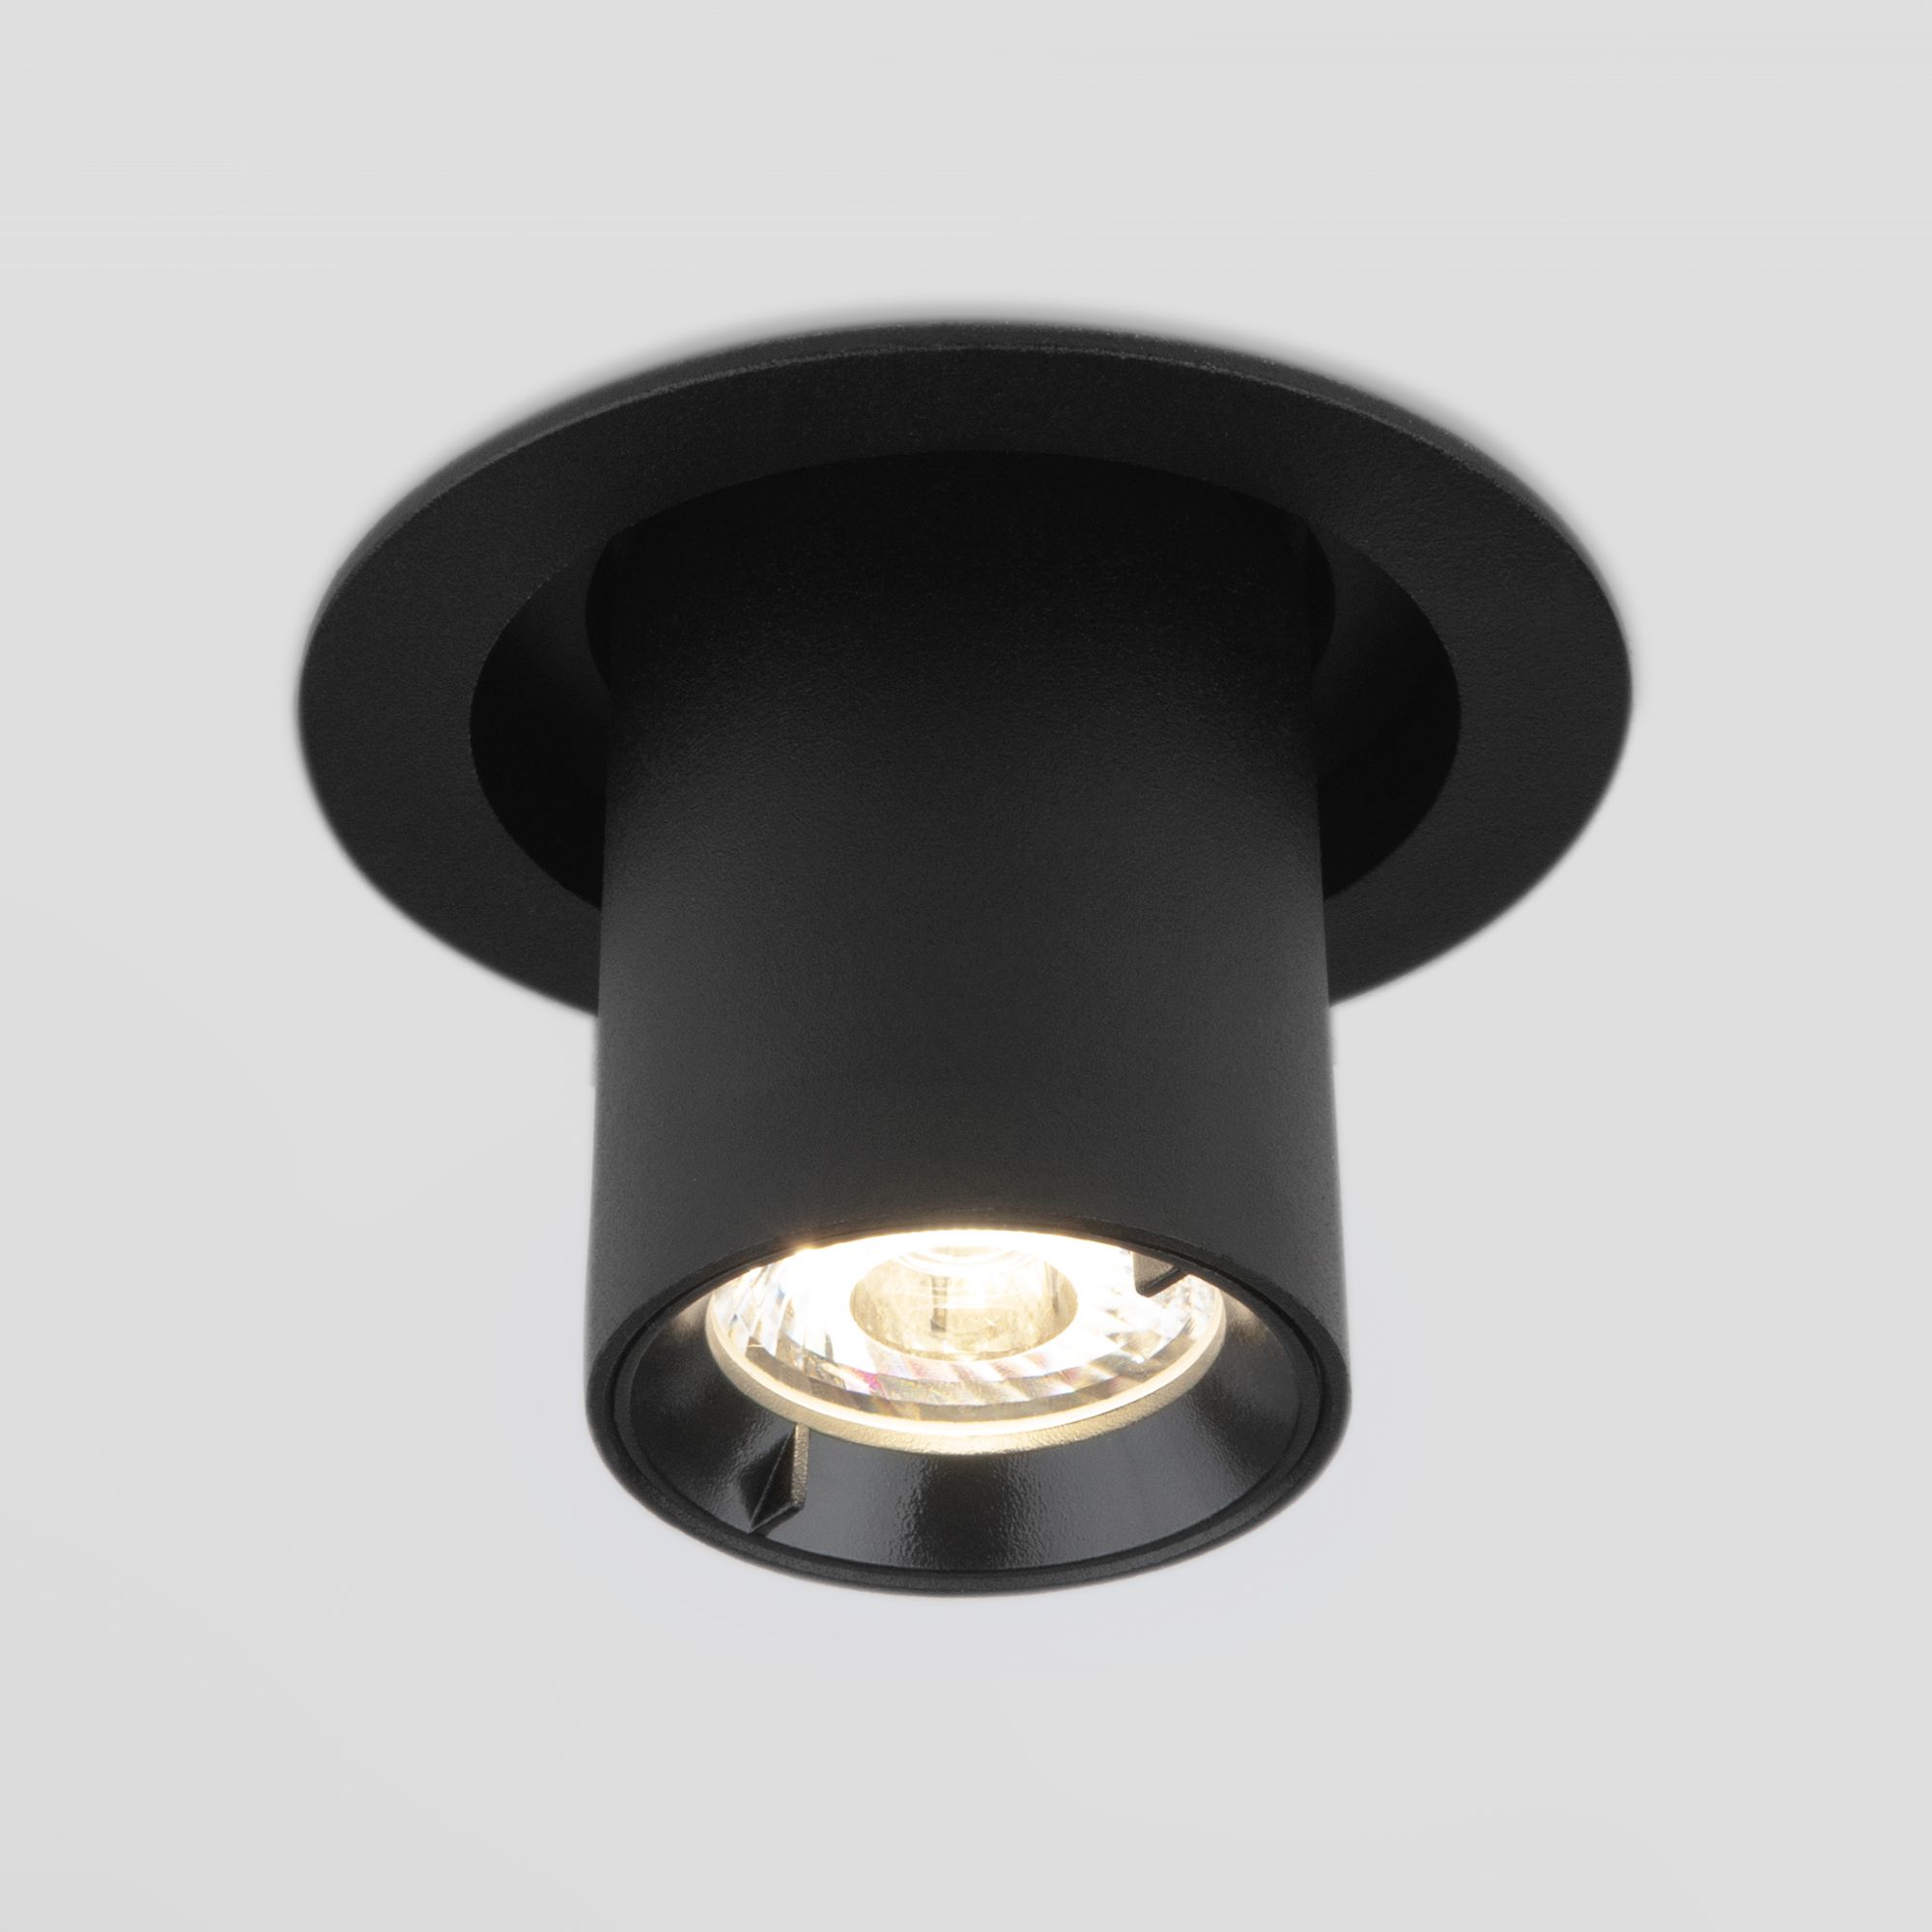 Встраиваемый точечный светодиодный светильник Pispa 10W 4200K черный матовый 9917 LED